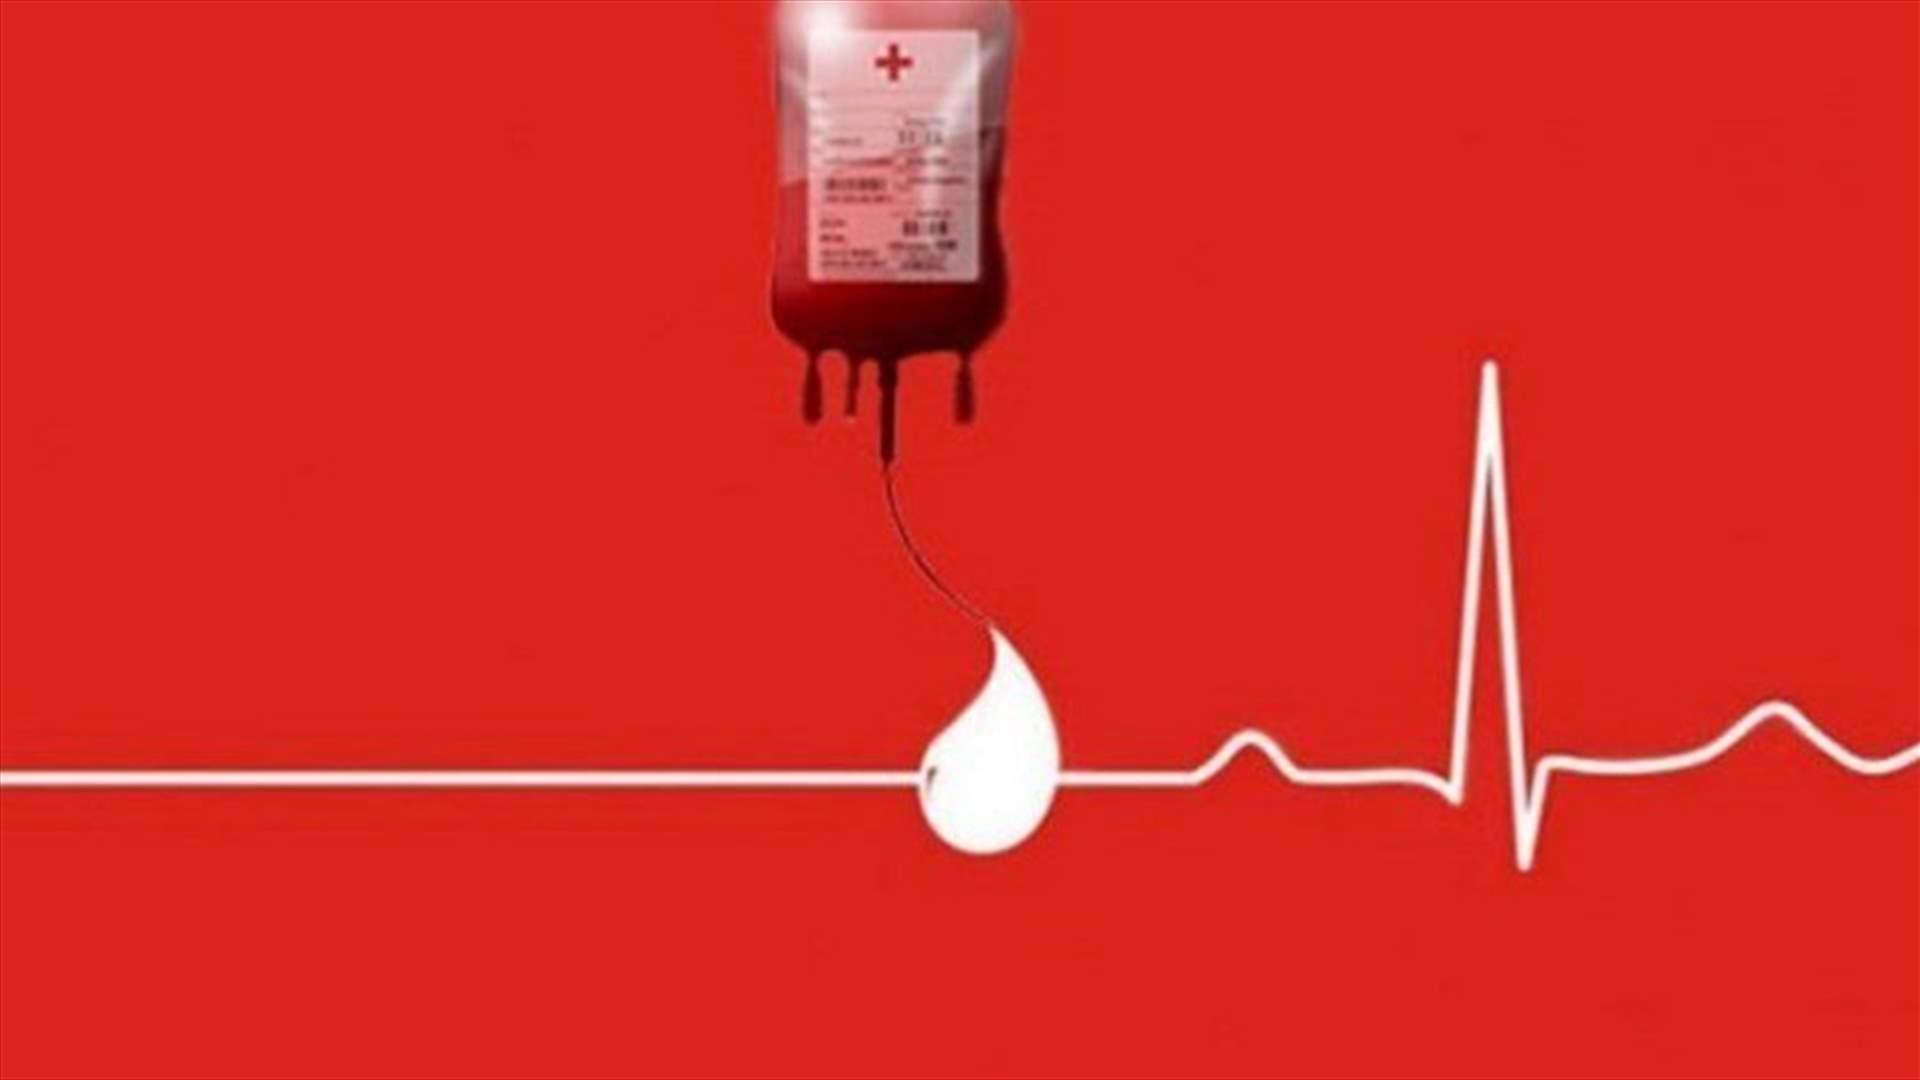 مريضة بحاجة ماسة لوحدات دم من فئة AB+ في مستشفى سيدة ماريتيم - جبيل أو في أي فرع للصليب الأحمر.. للتبرع الرجاء الاتصال على الرقم التالي: 70206624